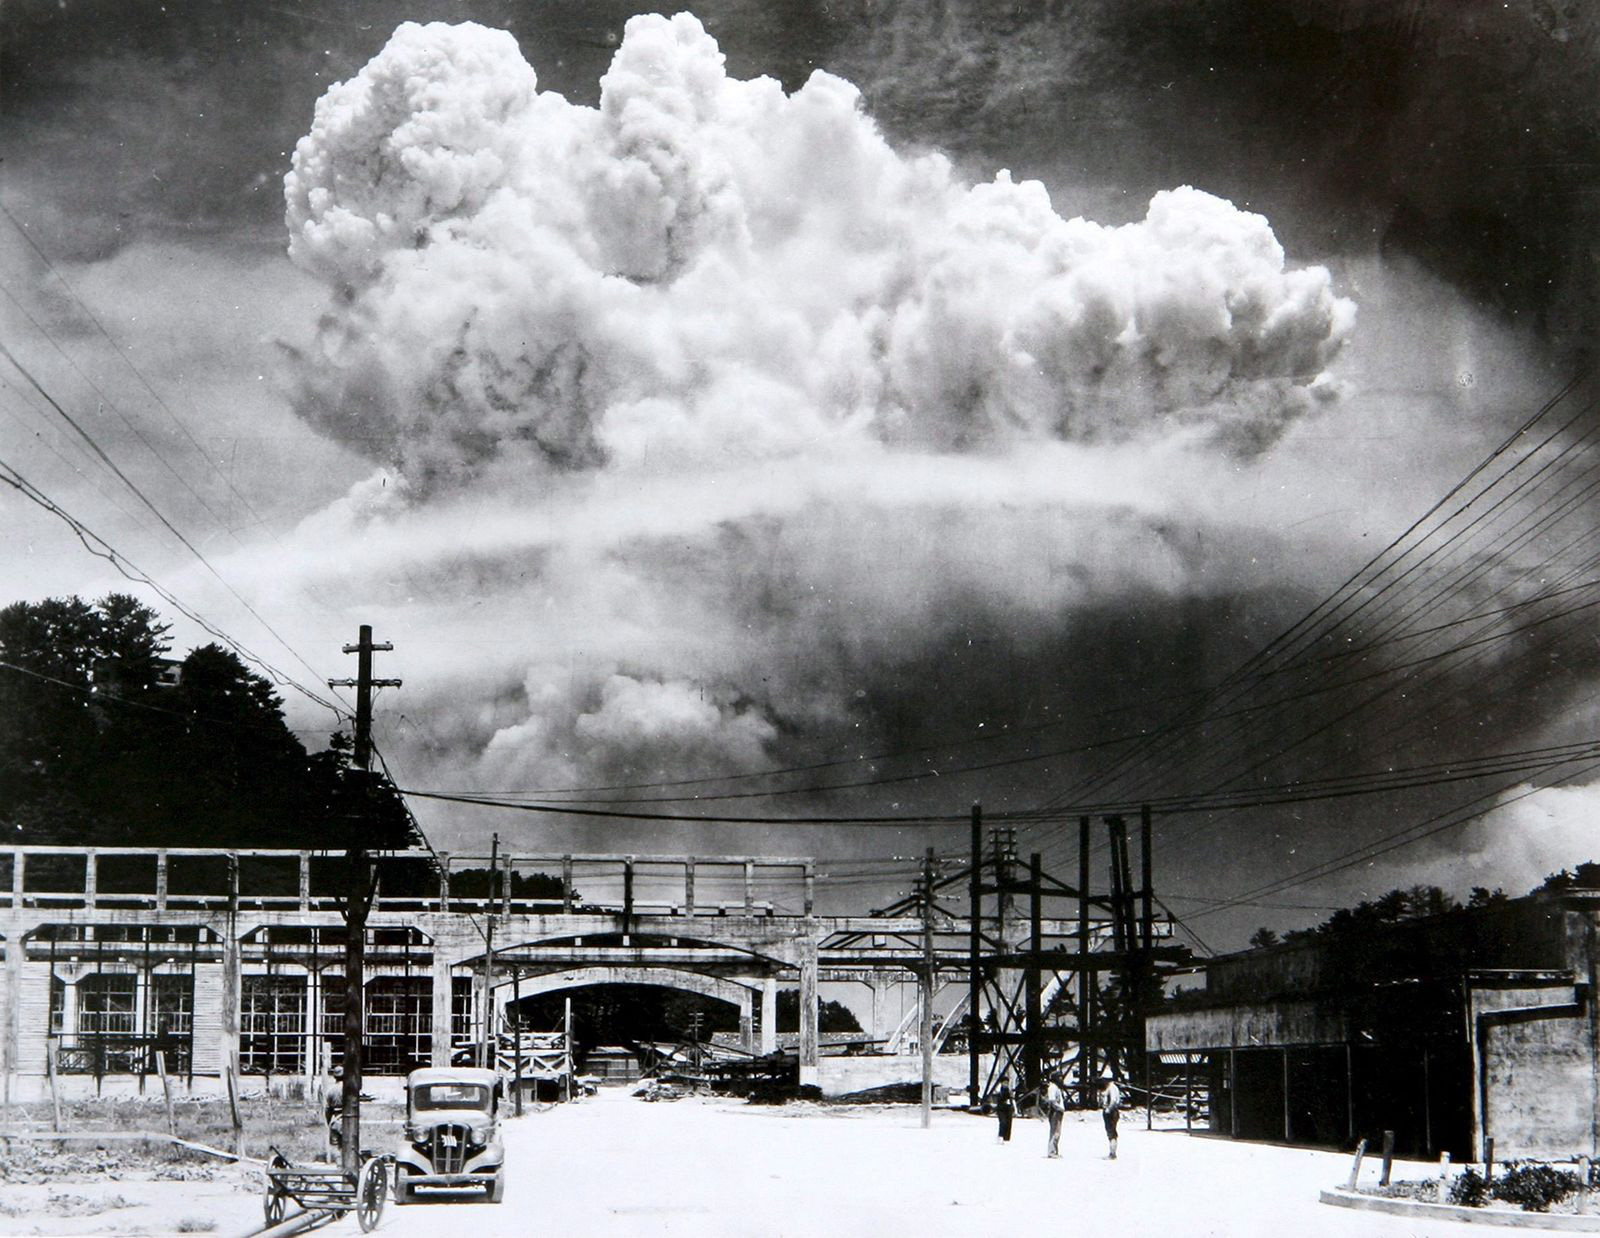 Kinh Hoàng Nhìn Lại Hình ảnh Ném Bom Nguyên Tử Hiroshima Và Nagasaki